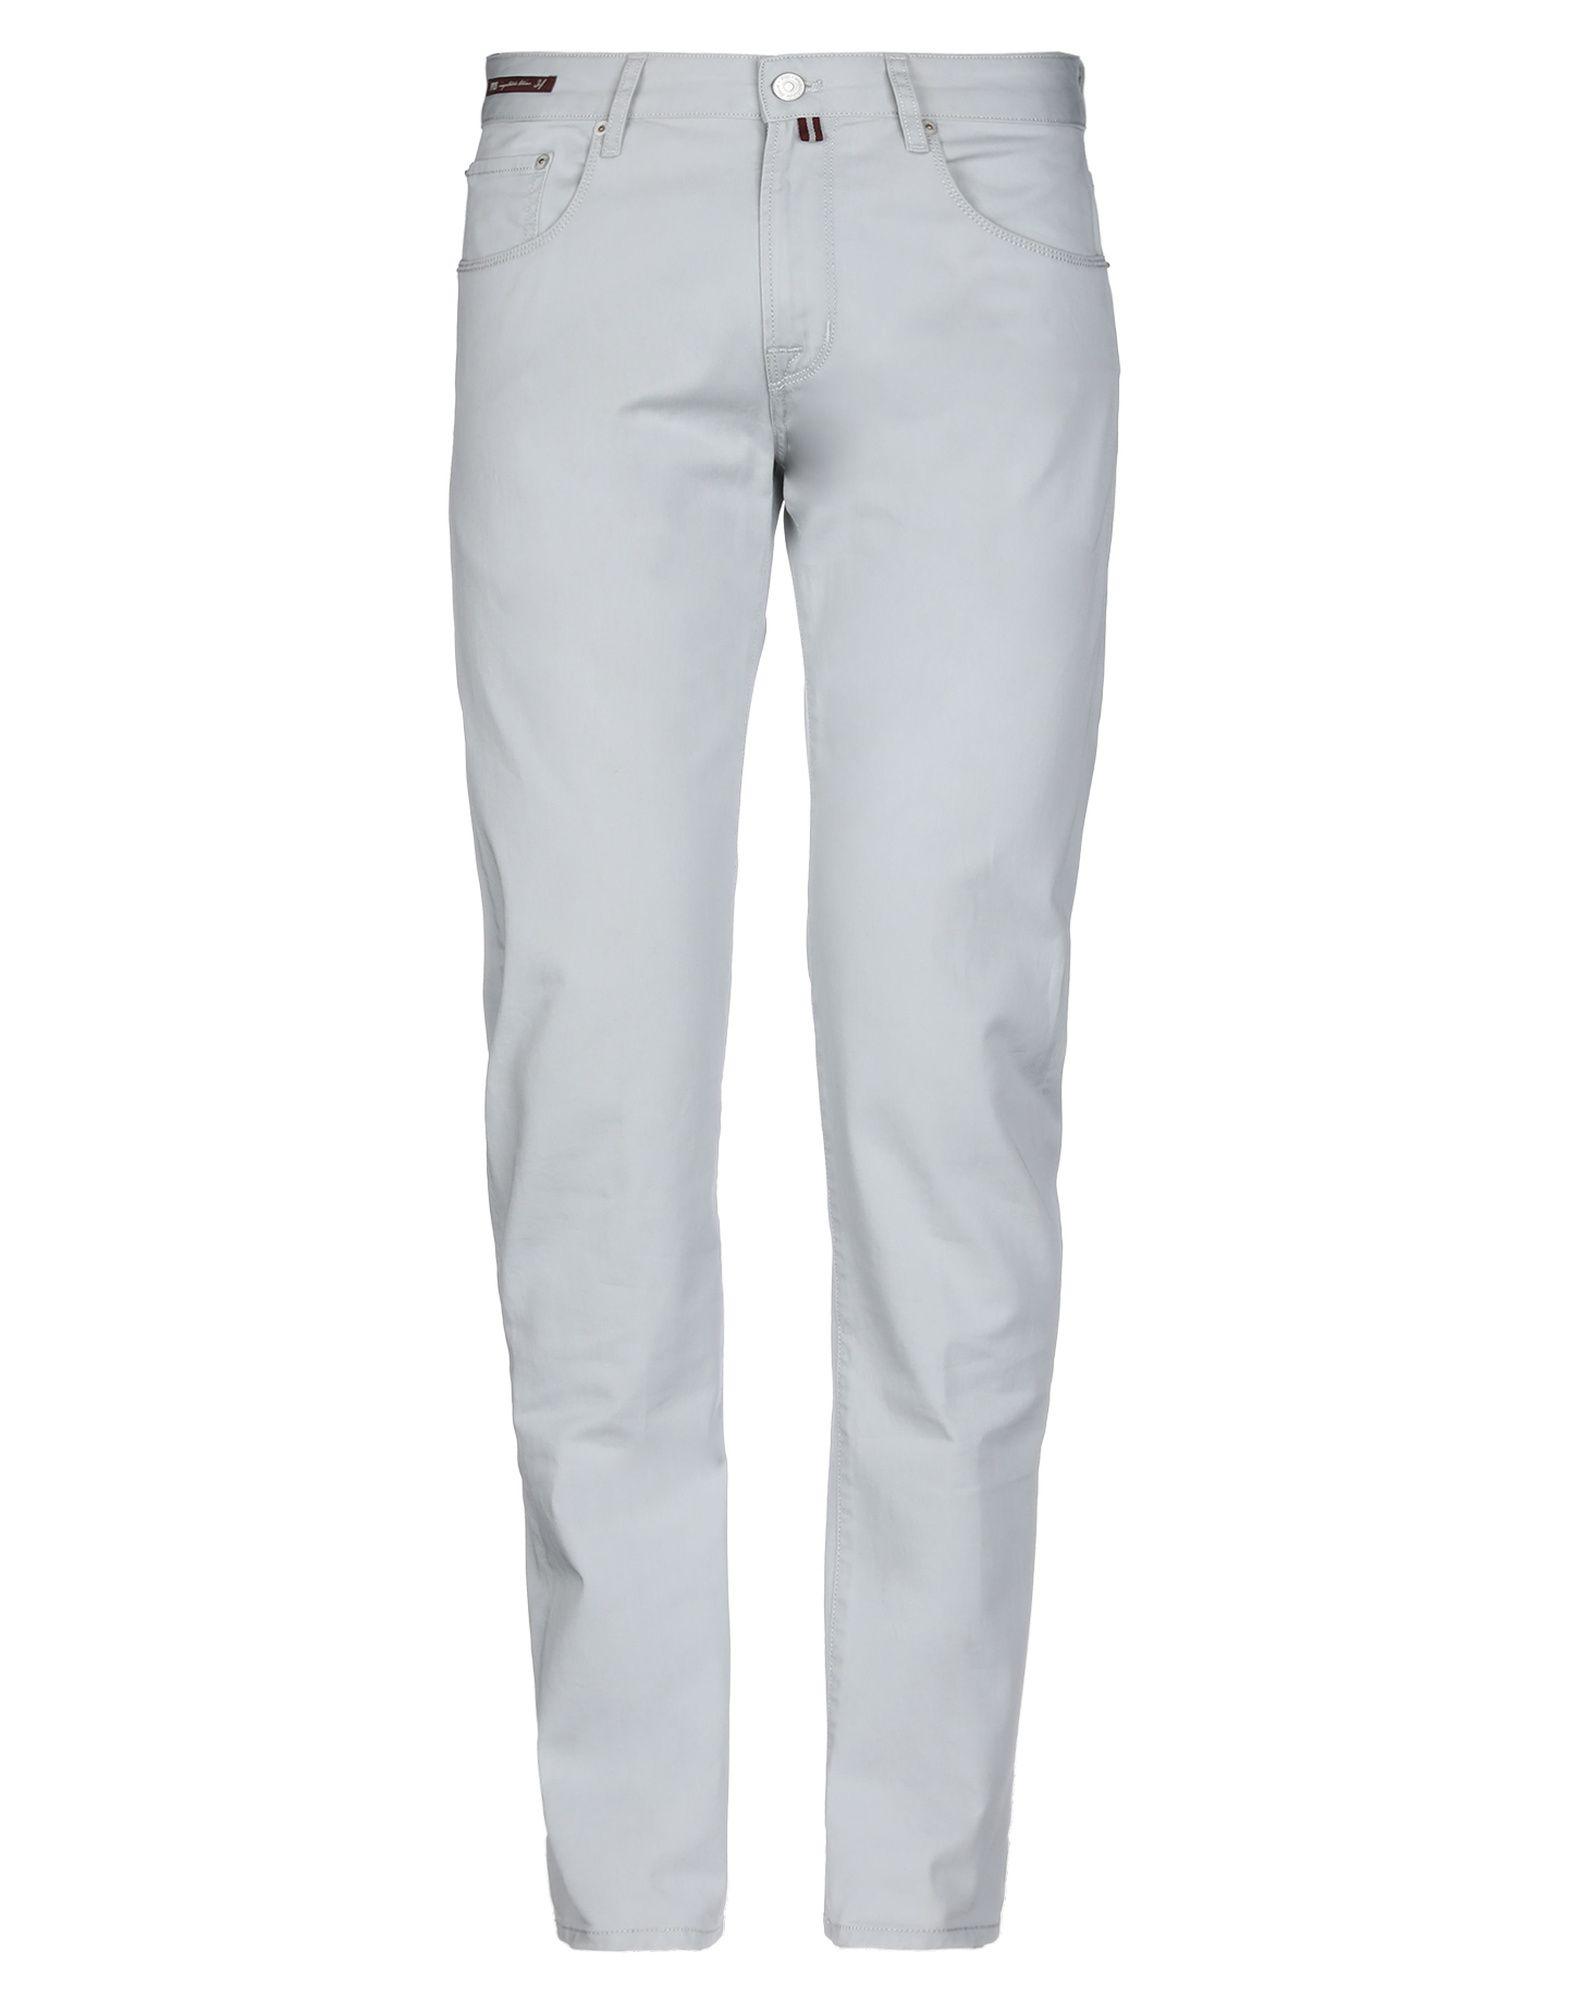 Pt05 Denim Pants in Light Grey (Gray) for Men - Lyst